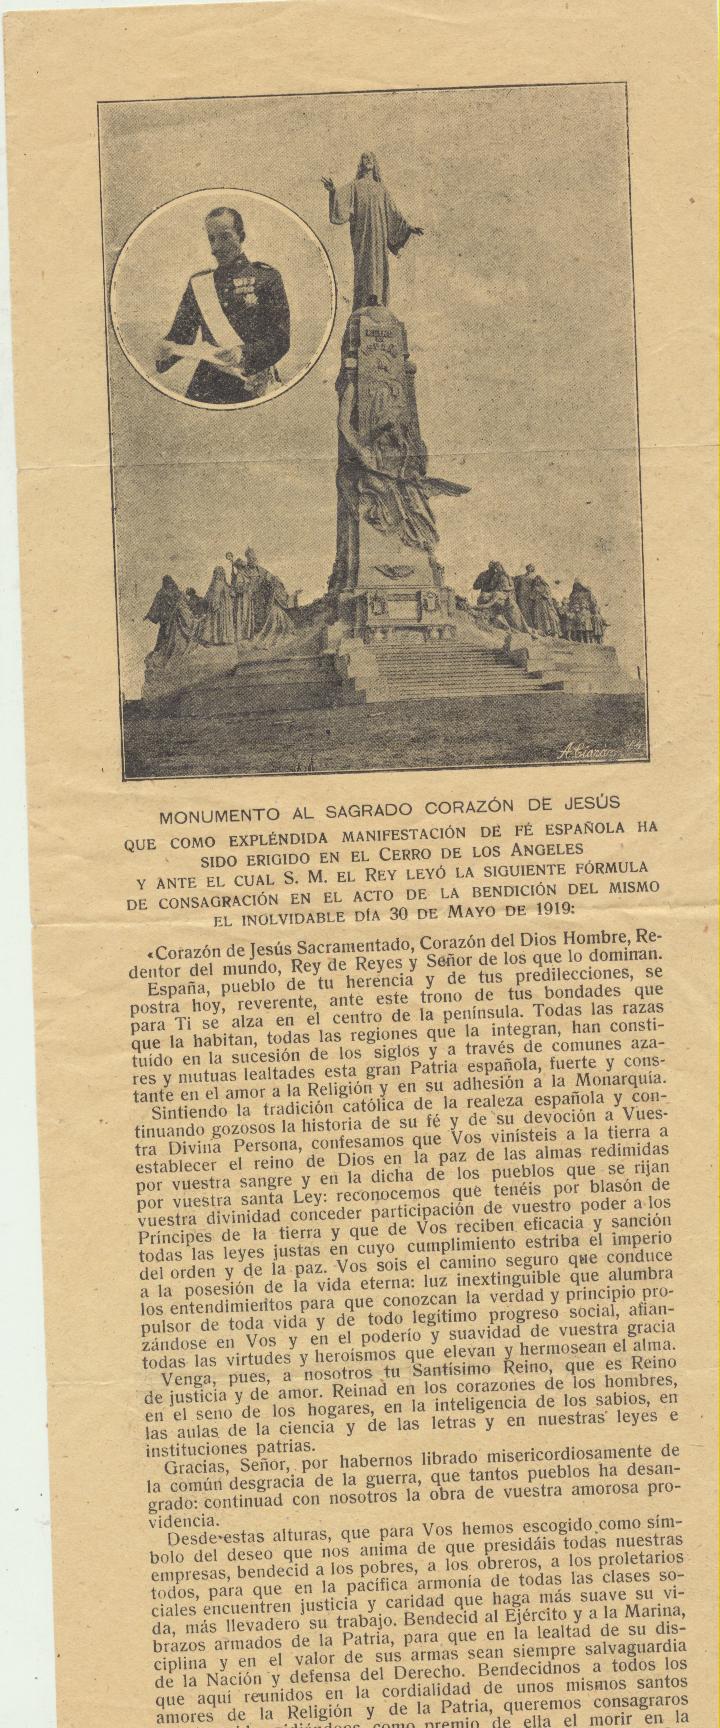 Inauguración del Monumento al Sagrado Corazón de Jesús en el cerro de Los Ángeles. Presidido por el Rey